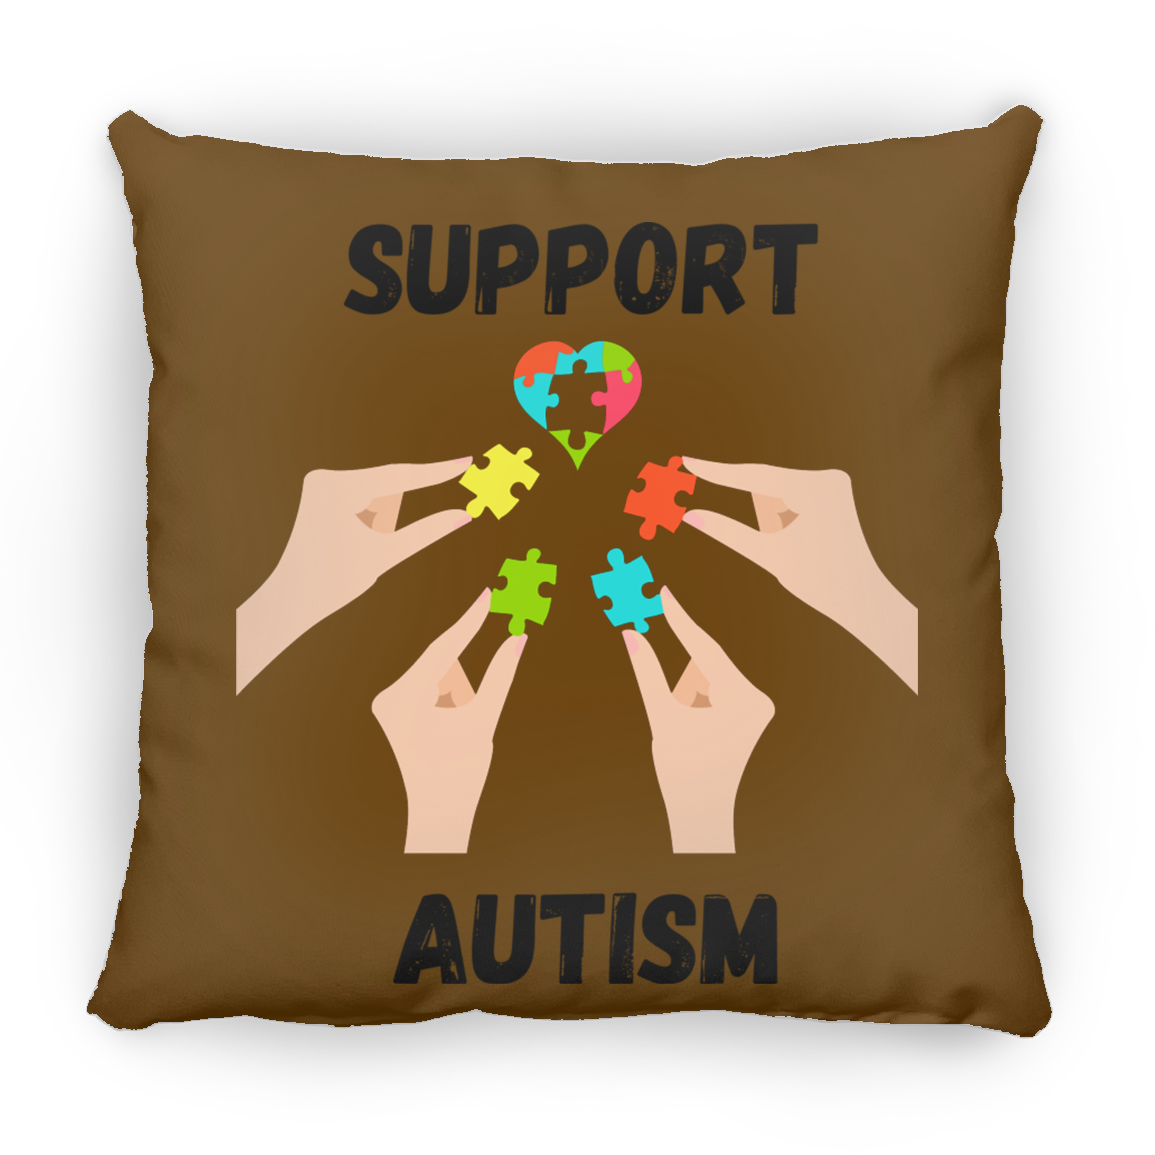 Support Autism Puzzle Piece Pillow